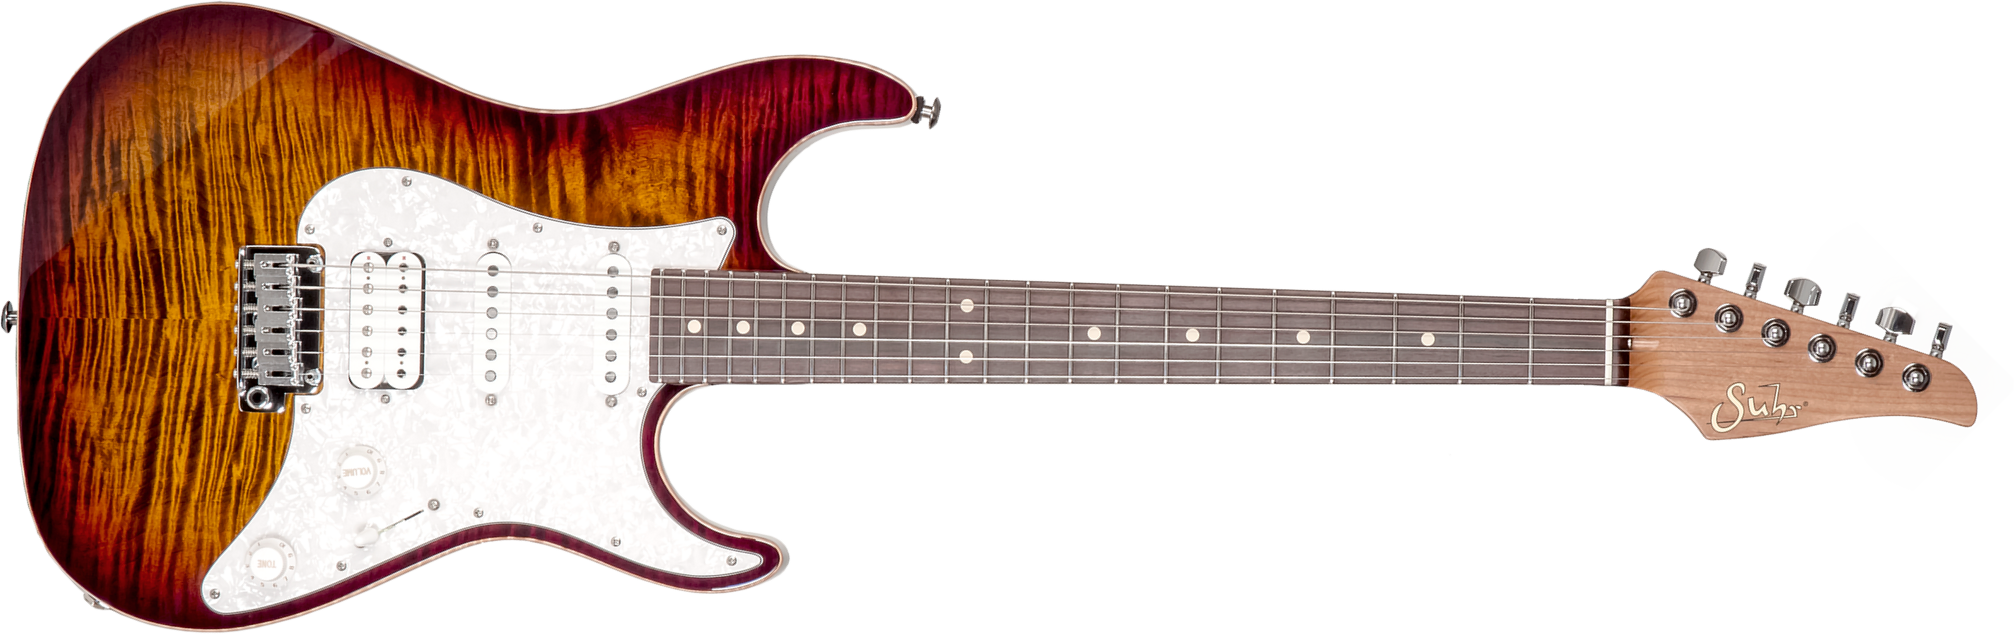 Suhr Standard Plus Usa Hss Trem Pf #72959 - Bengal Burst - Elektrische gitaar in Str-vorm - Main picture